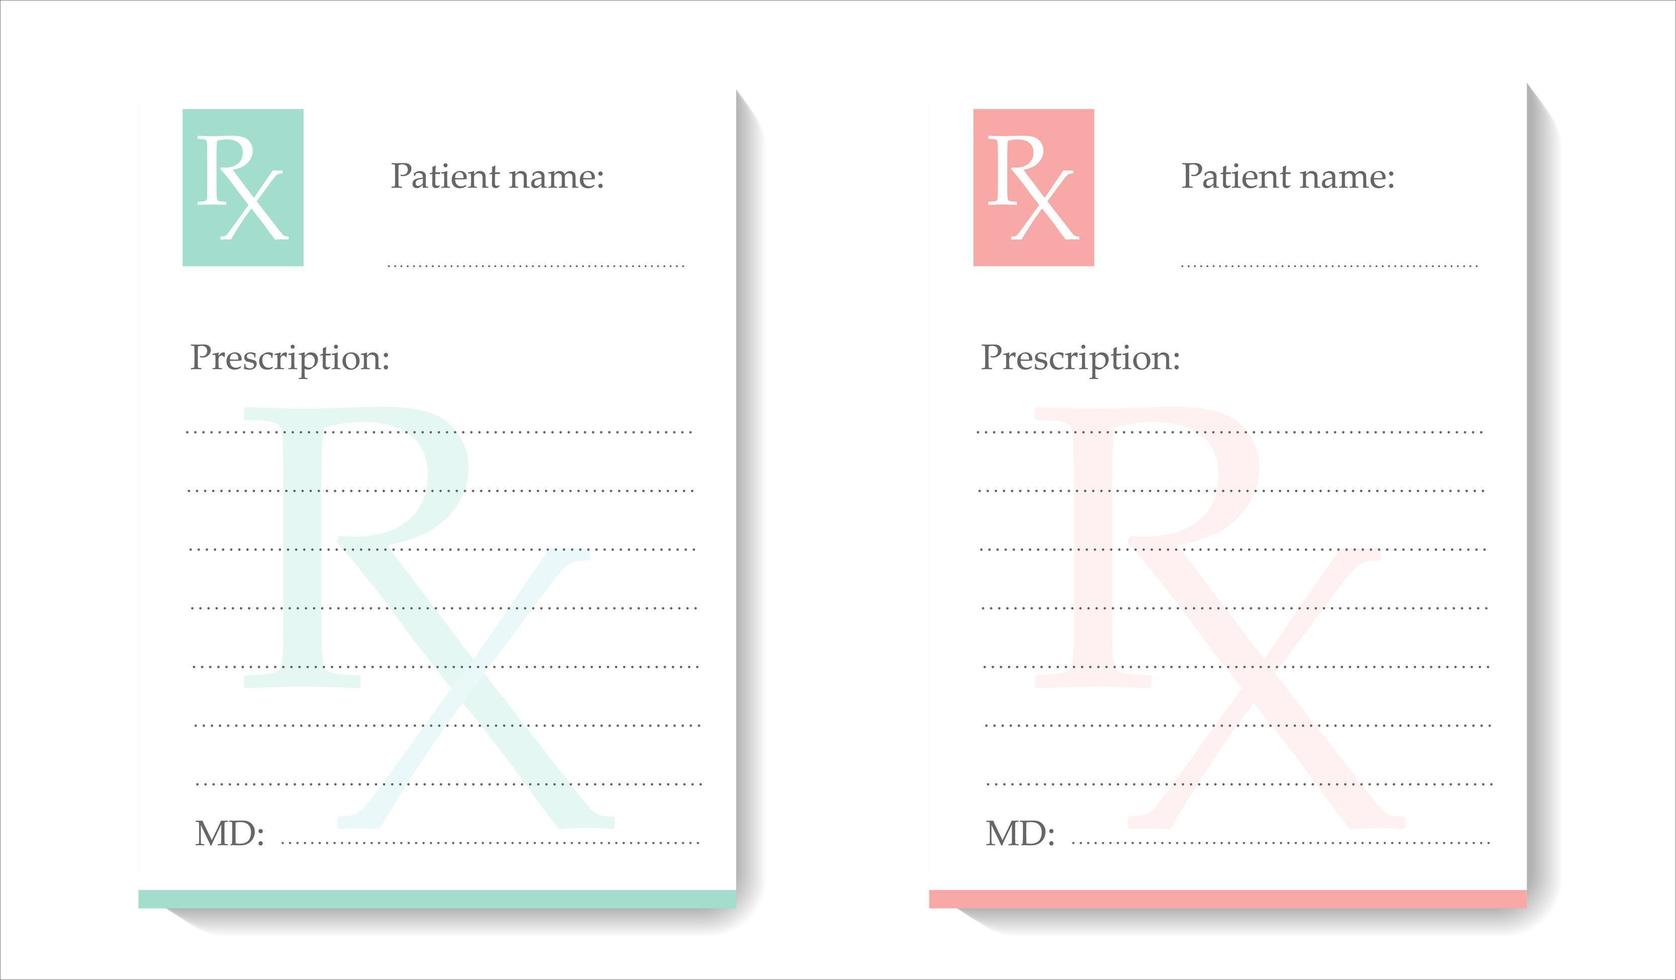 RX-Formular für verschreibungspflichtige Medikamente zum Ausdrucken. Krankenakte. vektor